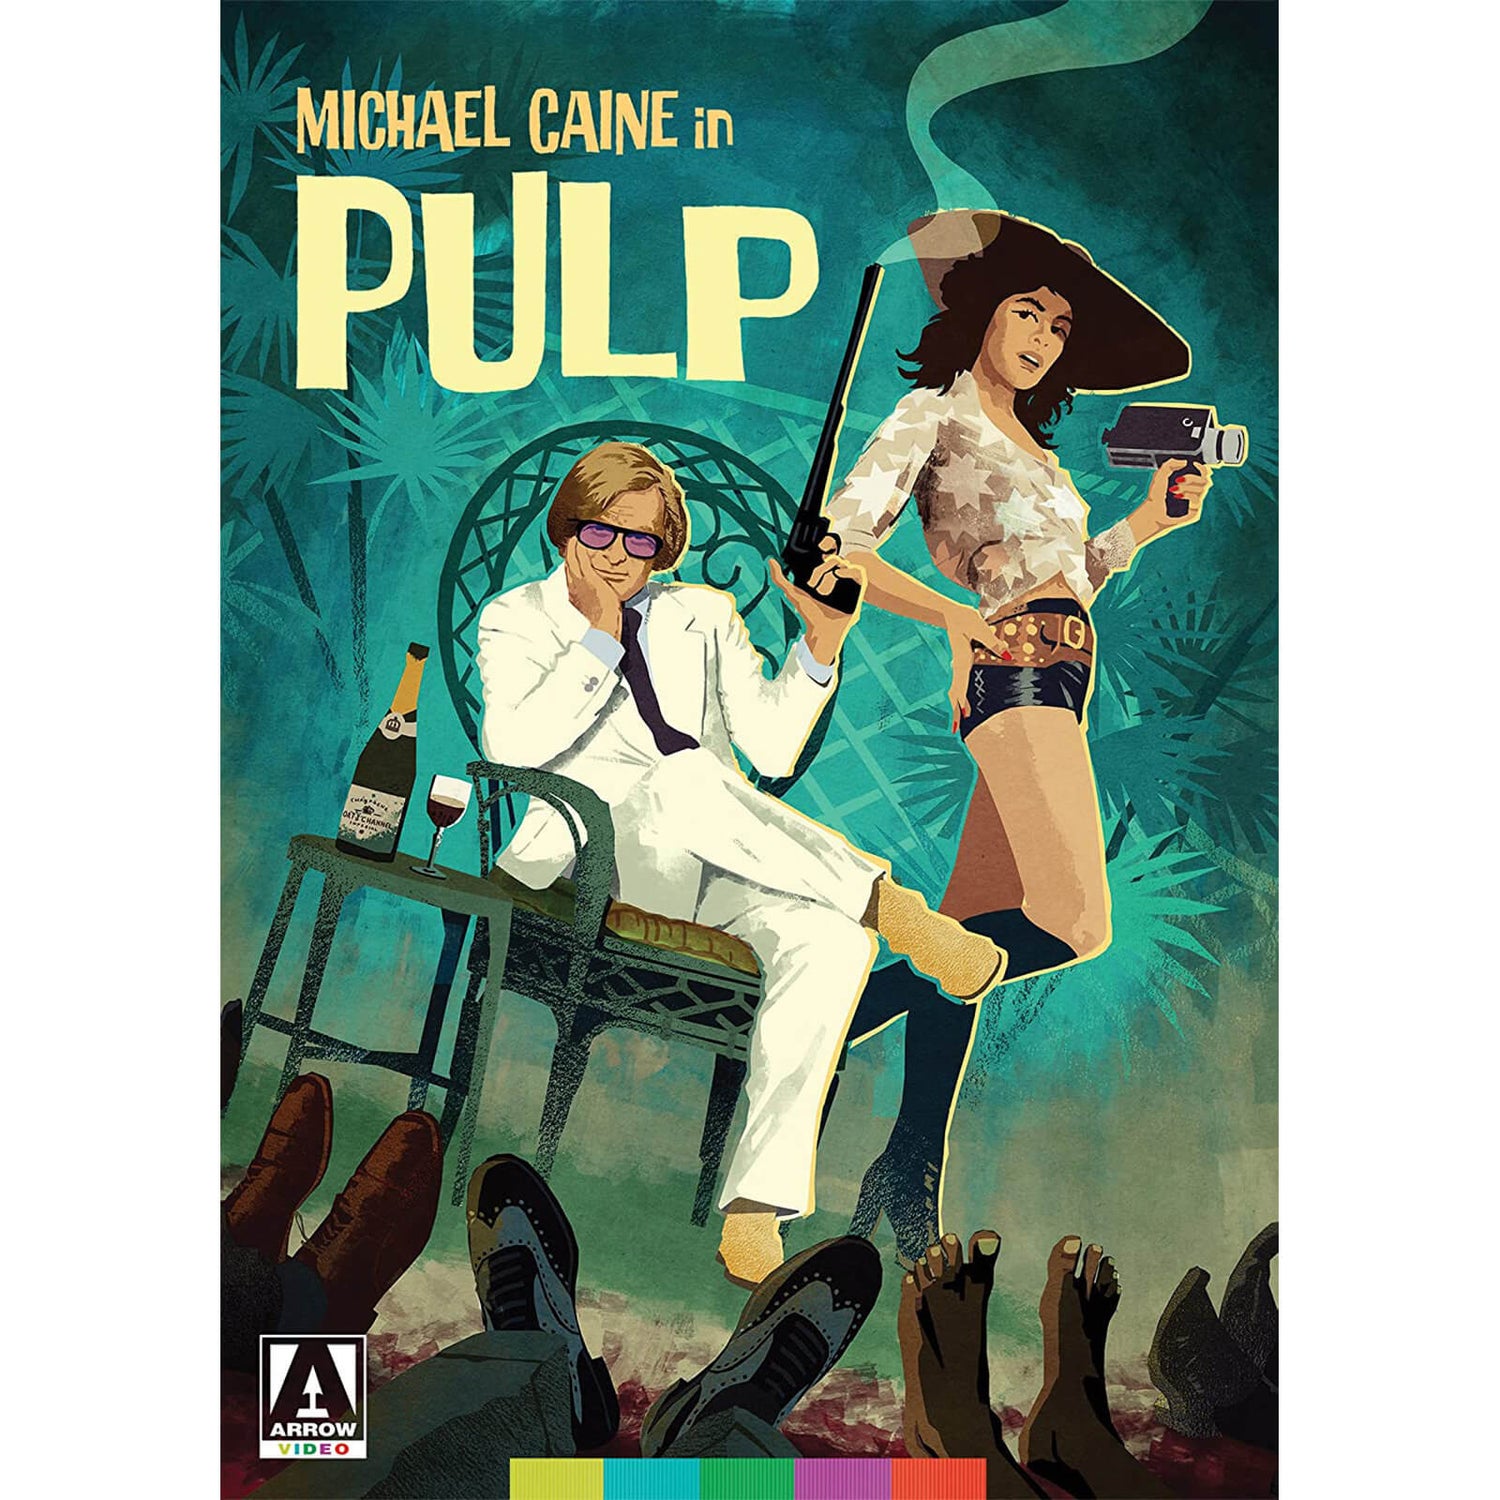 Pulp DVD